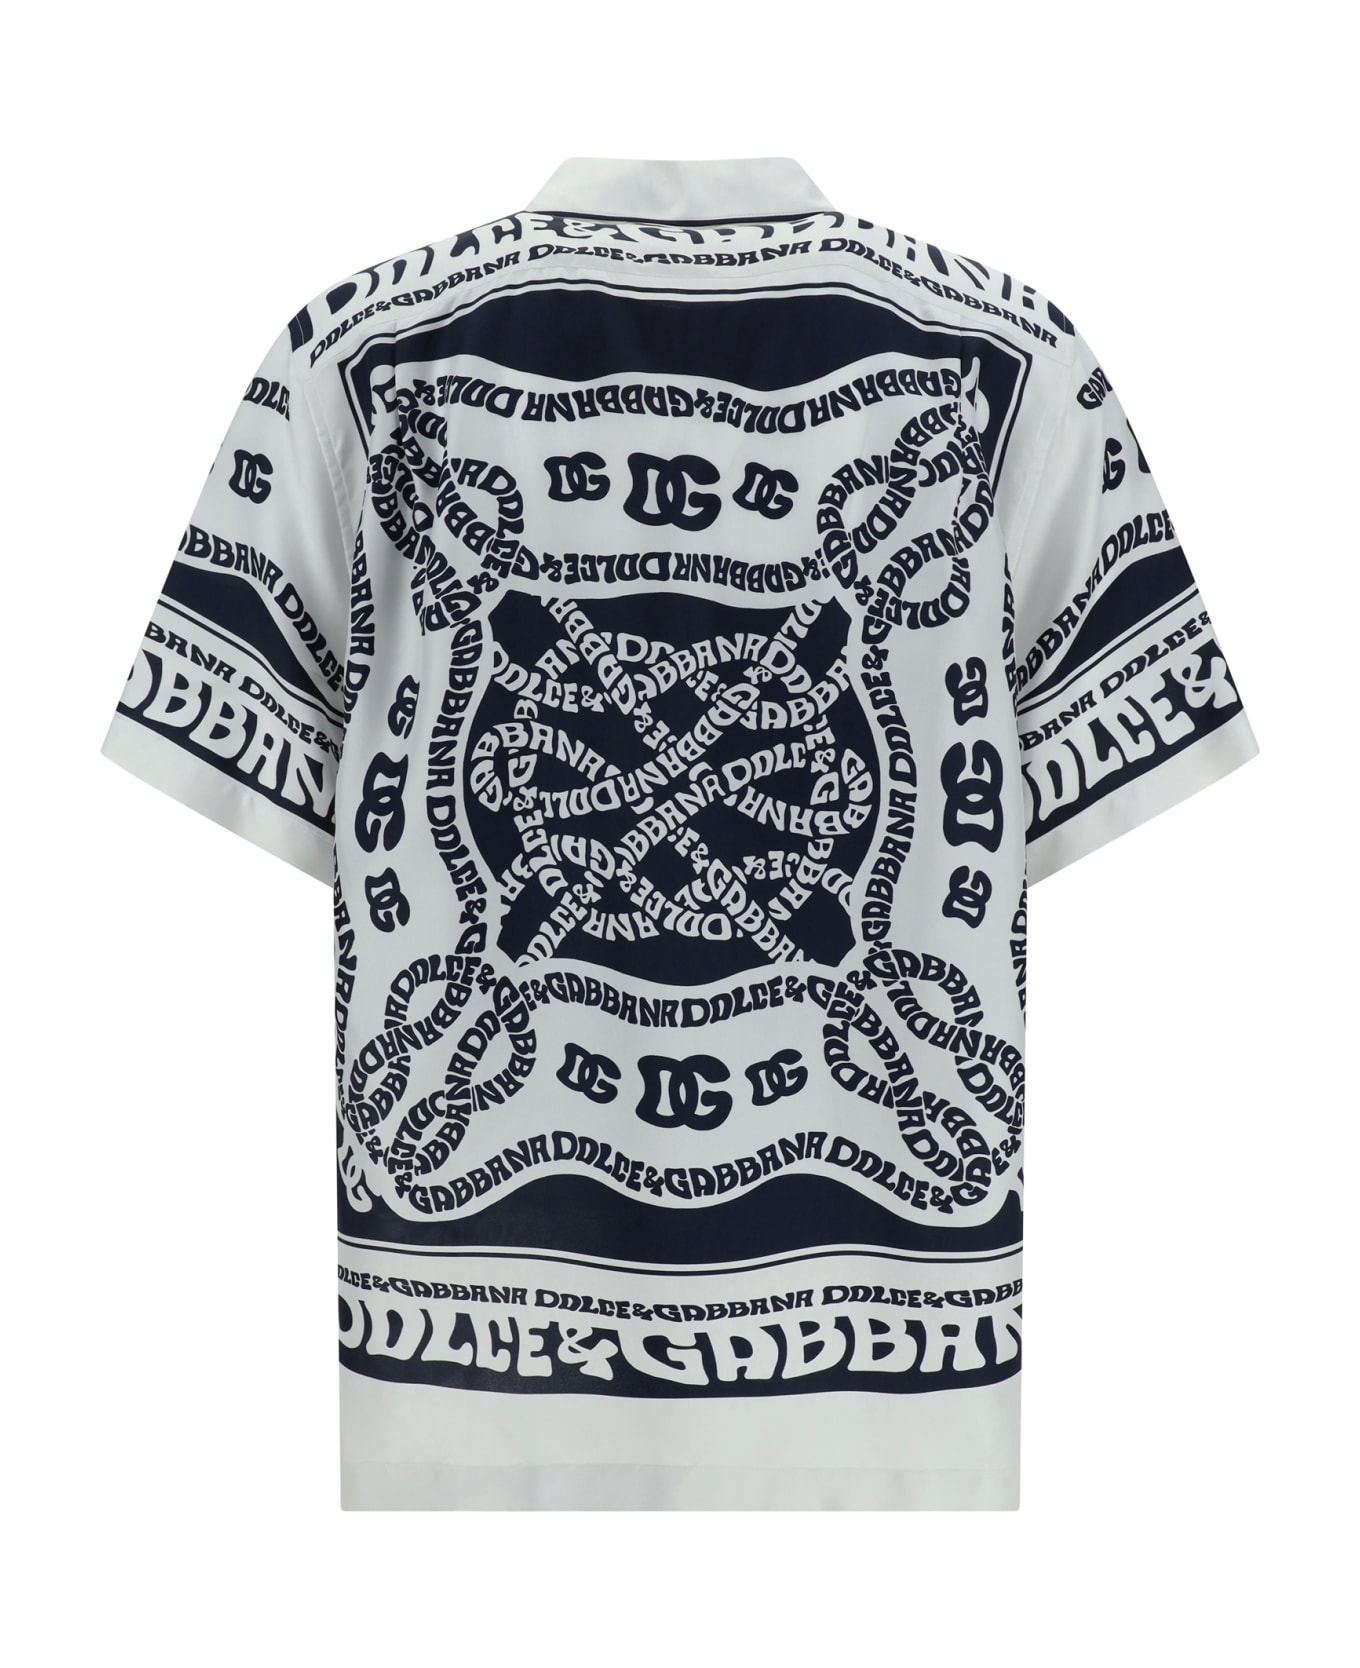 Dolce & Gabbana Shirt - Dg Marina Blu シャツ